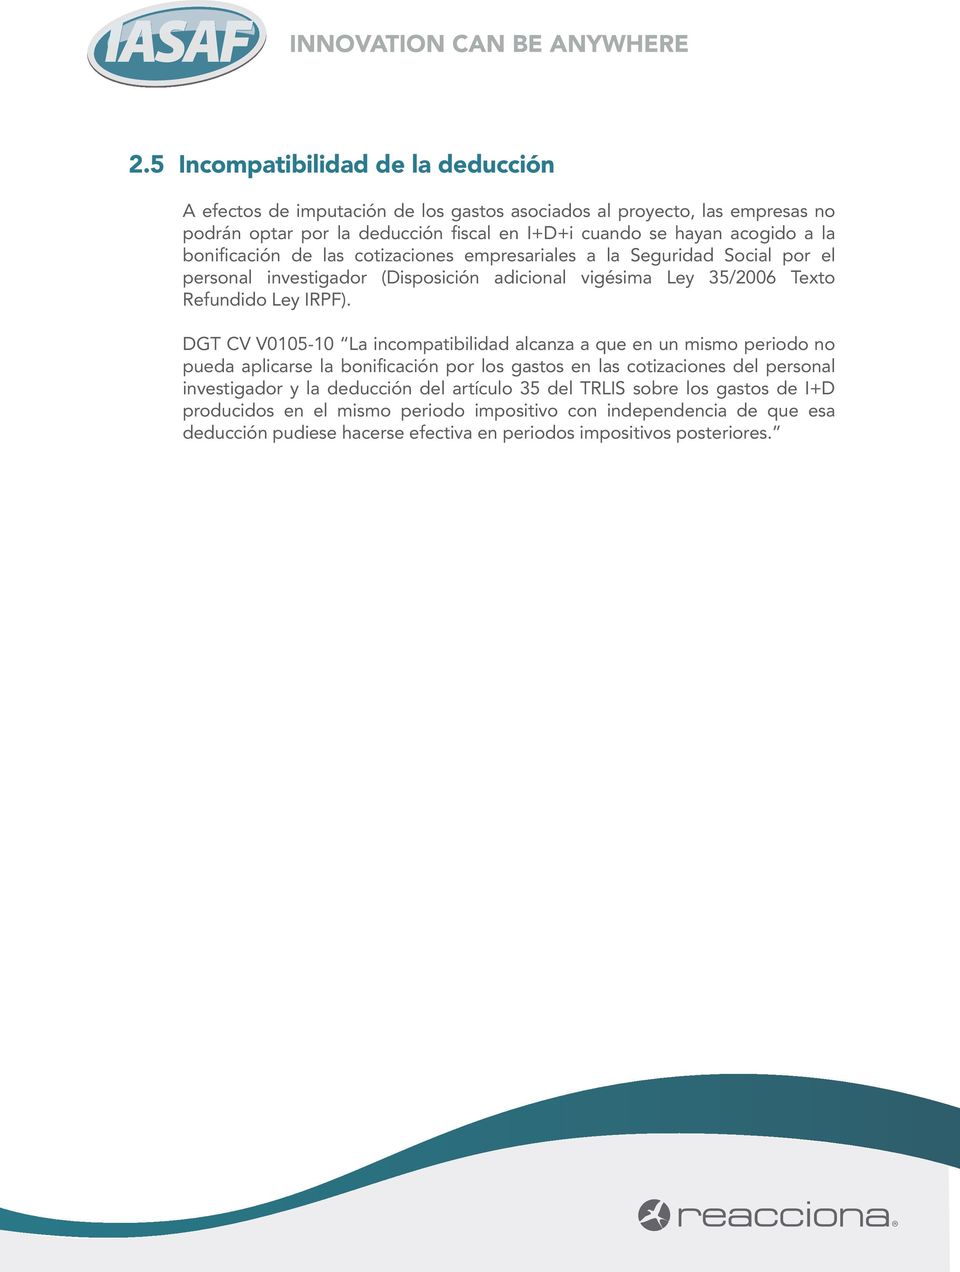 DGT CV V0105-10 La incompatibilidad alcanza a que en un mismo periodo no pueda aplicarse la bonificación por los gastos en las cotizaciones del personal investigador y la deducción